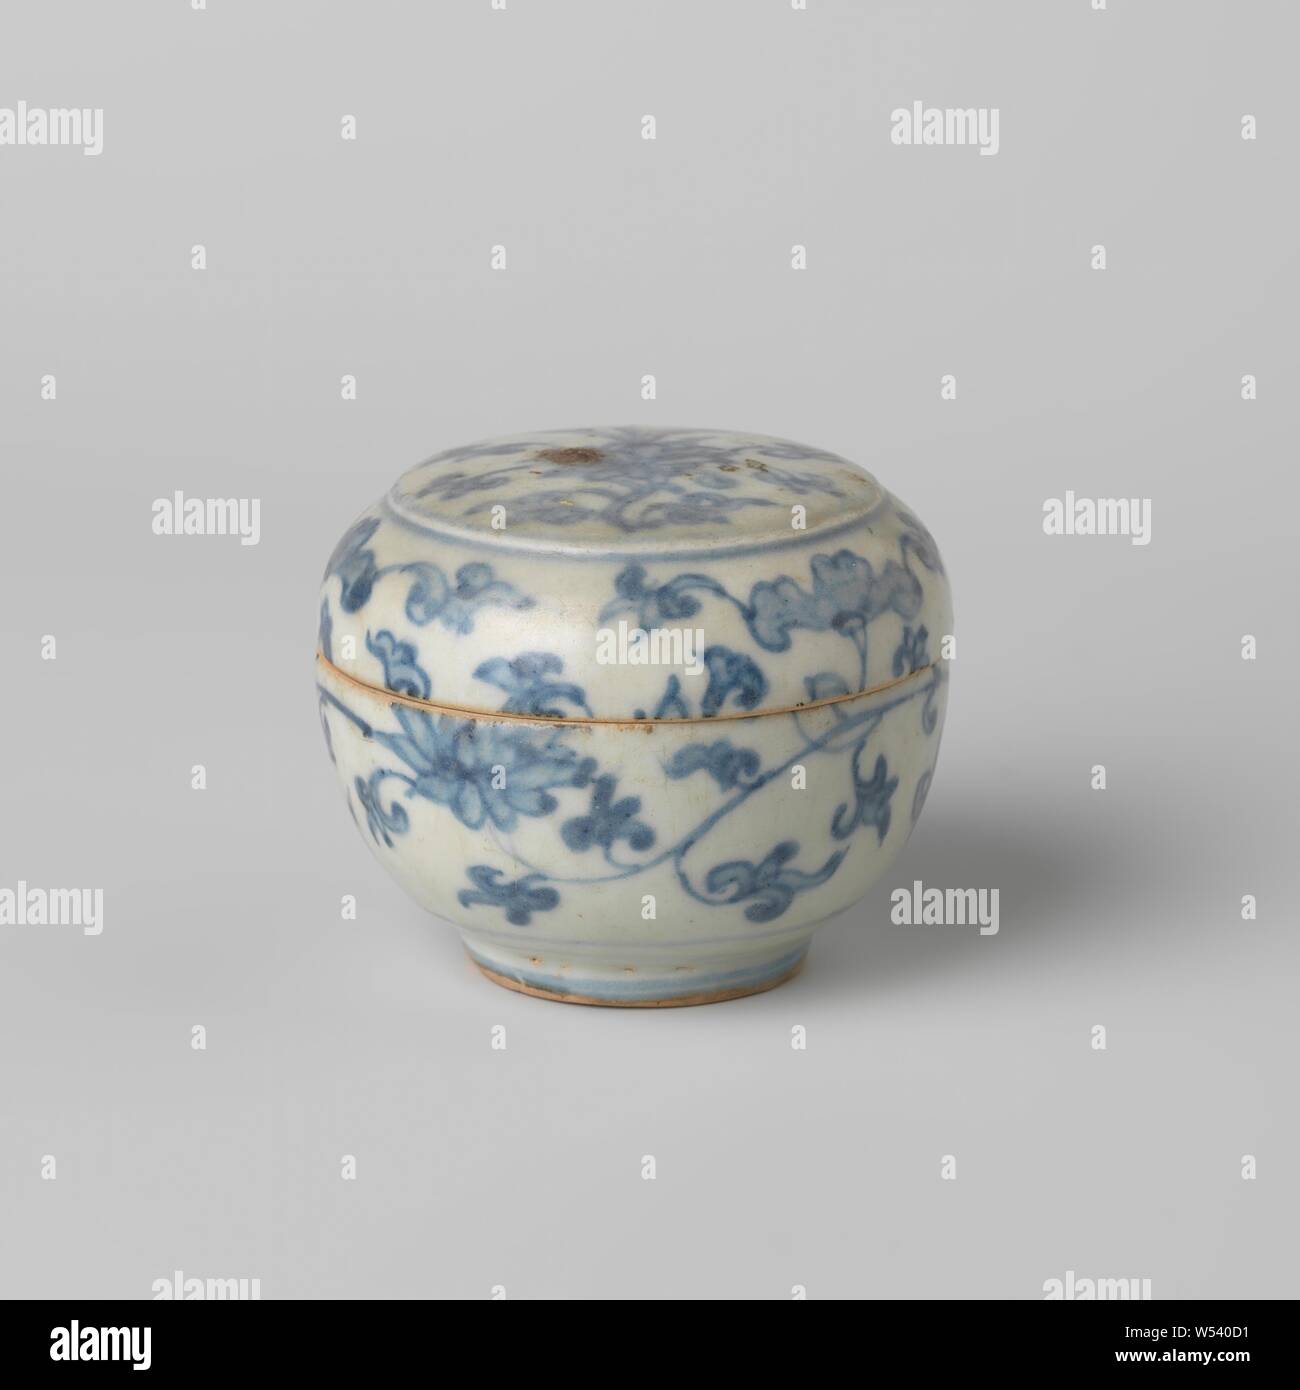 Runde Box mit Lotus blättert, runde Box aus Porzellan, bemalt Unterglasur blau. Lotus Reben, die auf der Wand fortsetzen. Blau Weiß., anonym, China, C. 1500 - C. 1599, Ming-Dynastie (1368-1644)/Hongzhi-Periode (1488-1505)/Zhengde-Periode (1506-1521)/Jiajing-Periode (1522-1566)/Longqing-Periode (1567-1572)/Wanli-Periode (1573-1619), Porzellan (Material), Glasur, Cobalt (Mineral), Verglasung, h 3,8 cm h 6,8 cm, d 3,7 cm Stockfoto